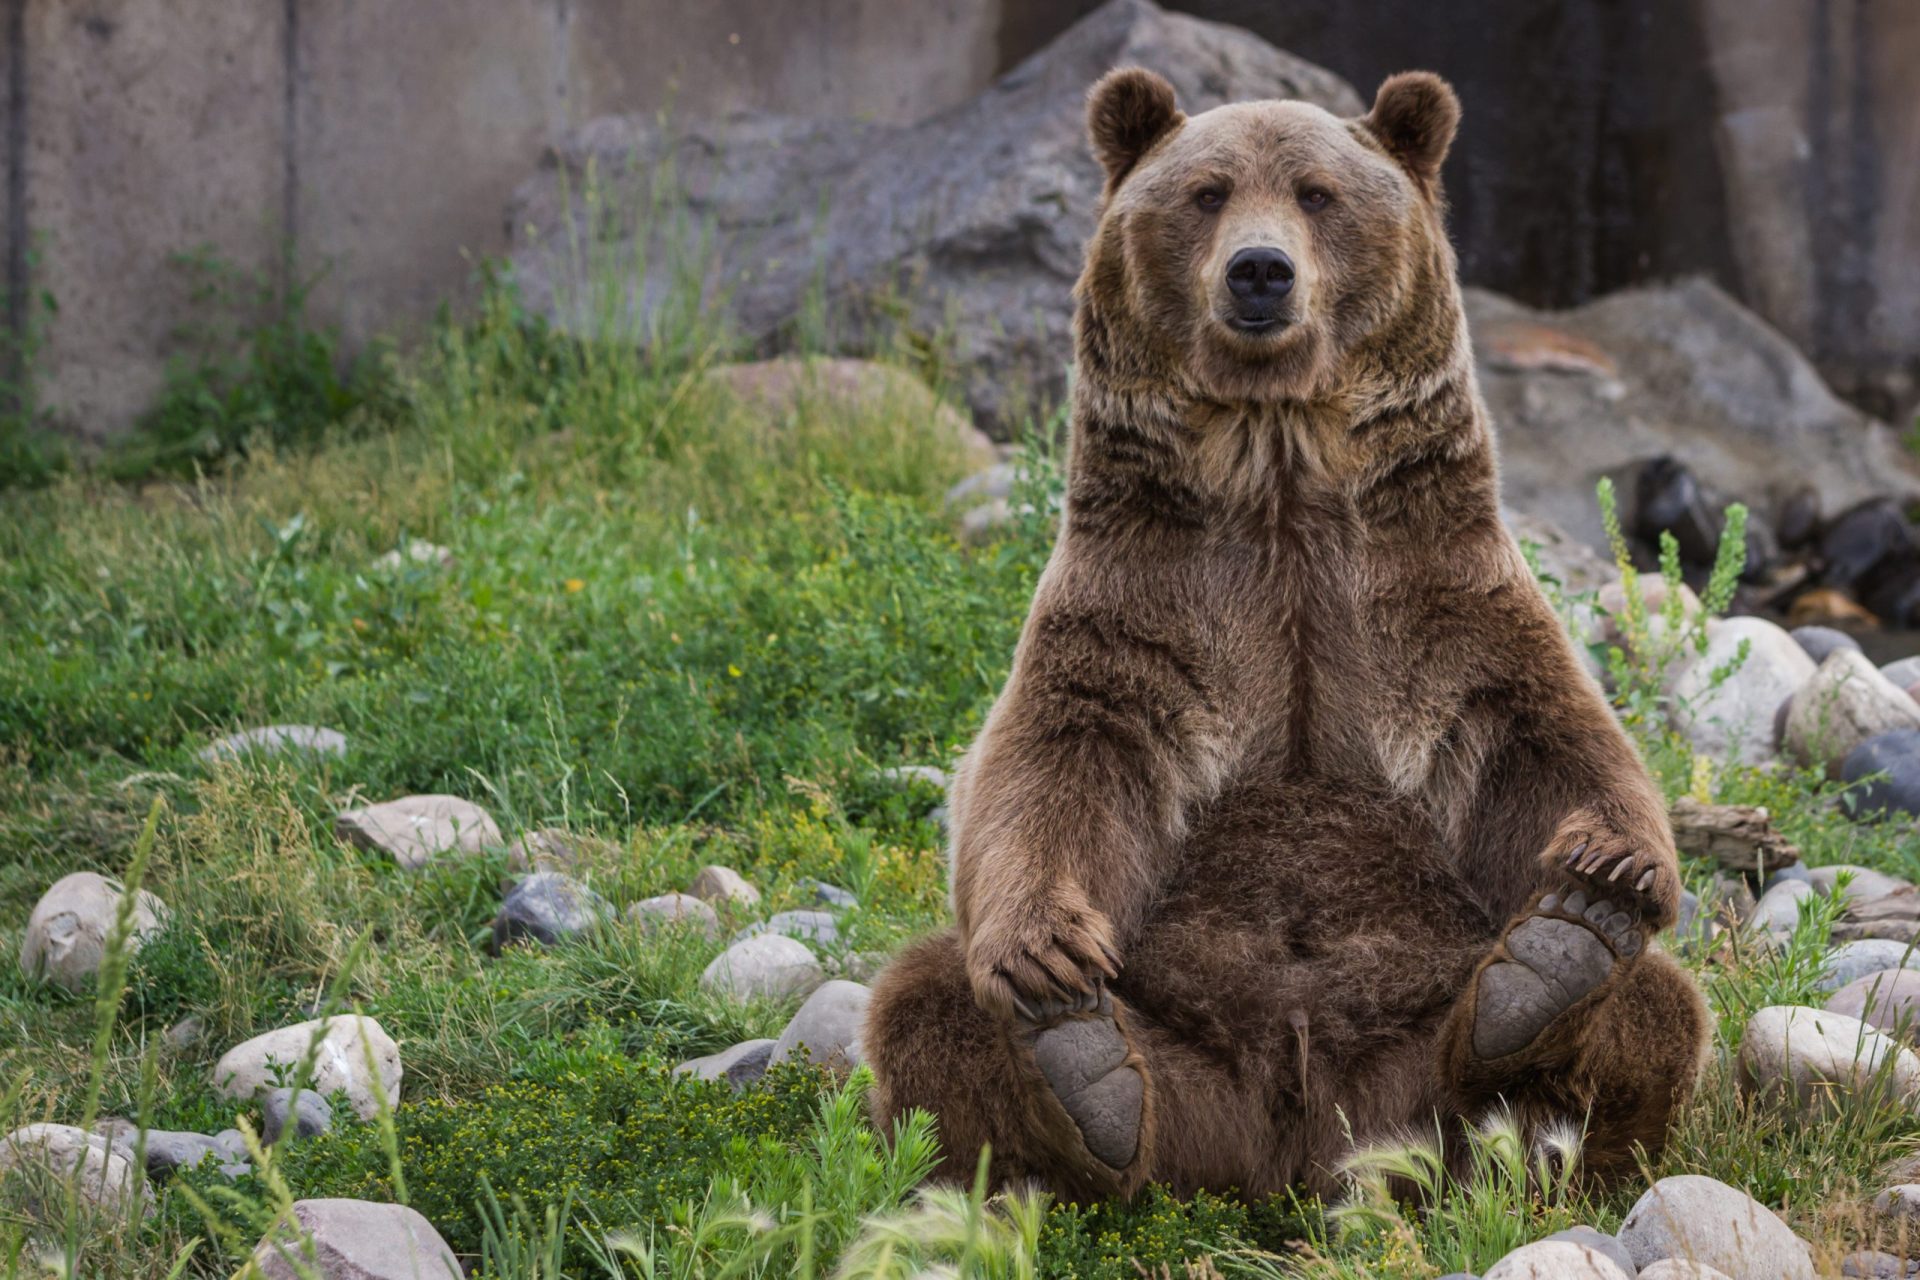 Urso entra em instalações de trânsito na Califórnia e deixa agentes surpreendidos | VÍDEO